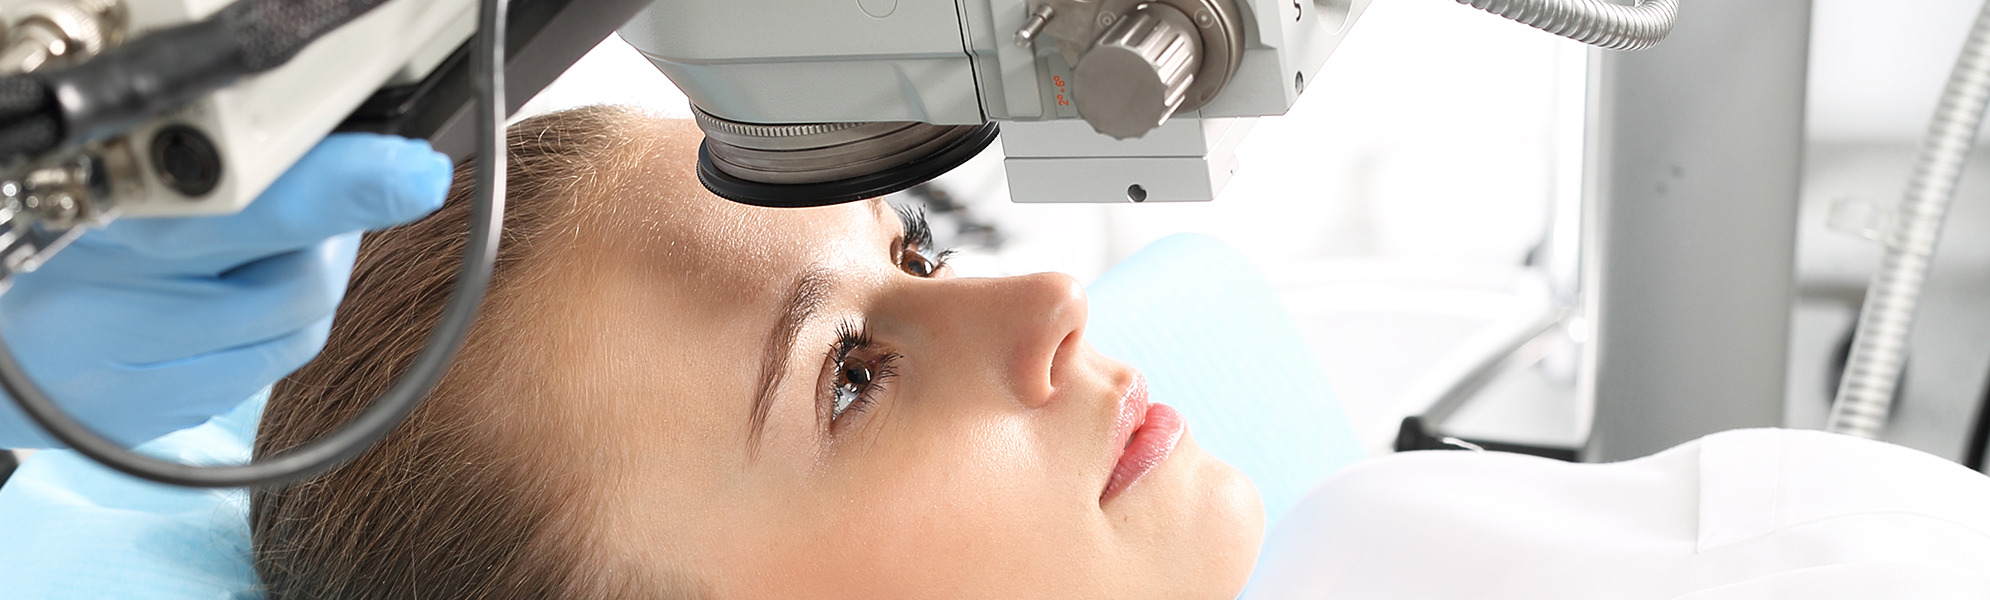 Augenheilkunde, Ophthalmologie, Augenmedizin und Optiken 